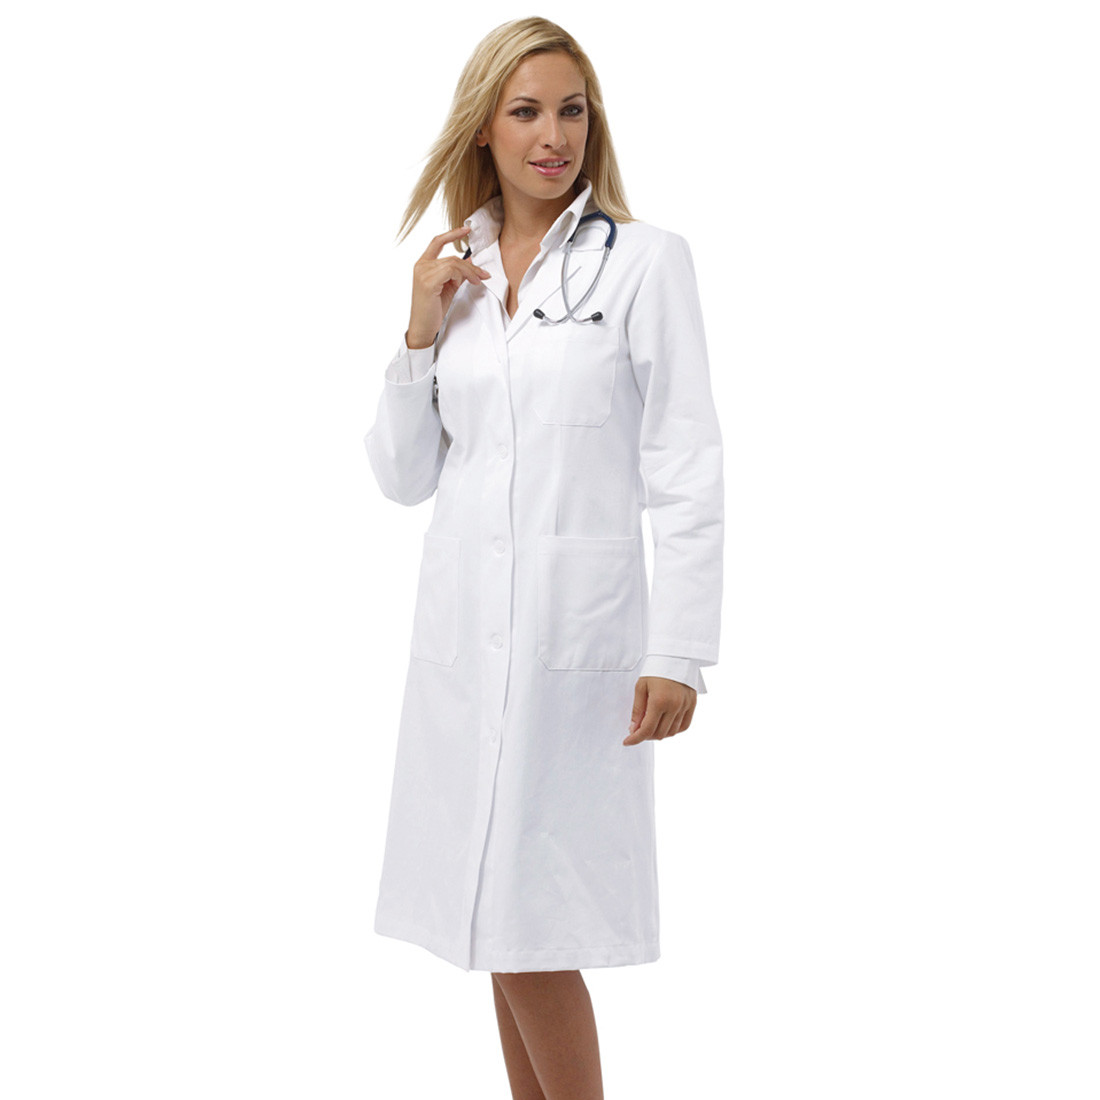 ONER medical coat - Safetywear